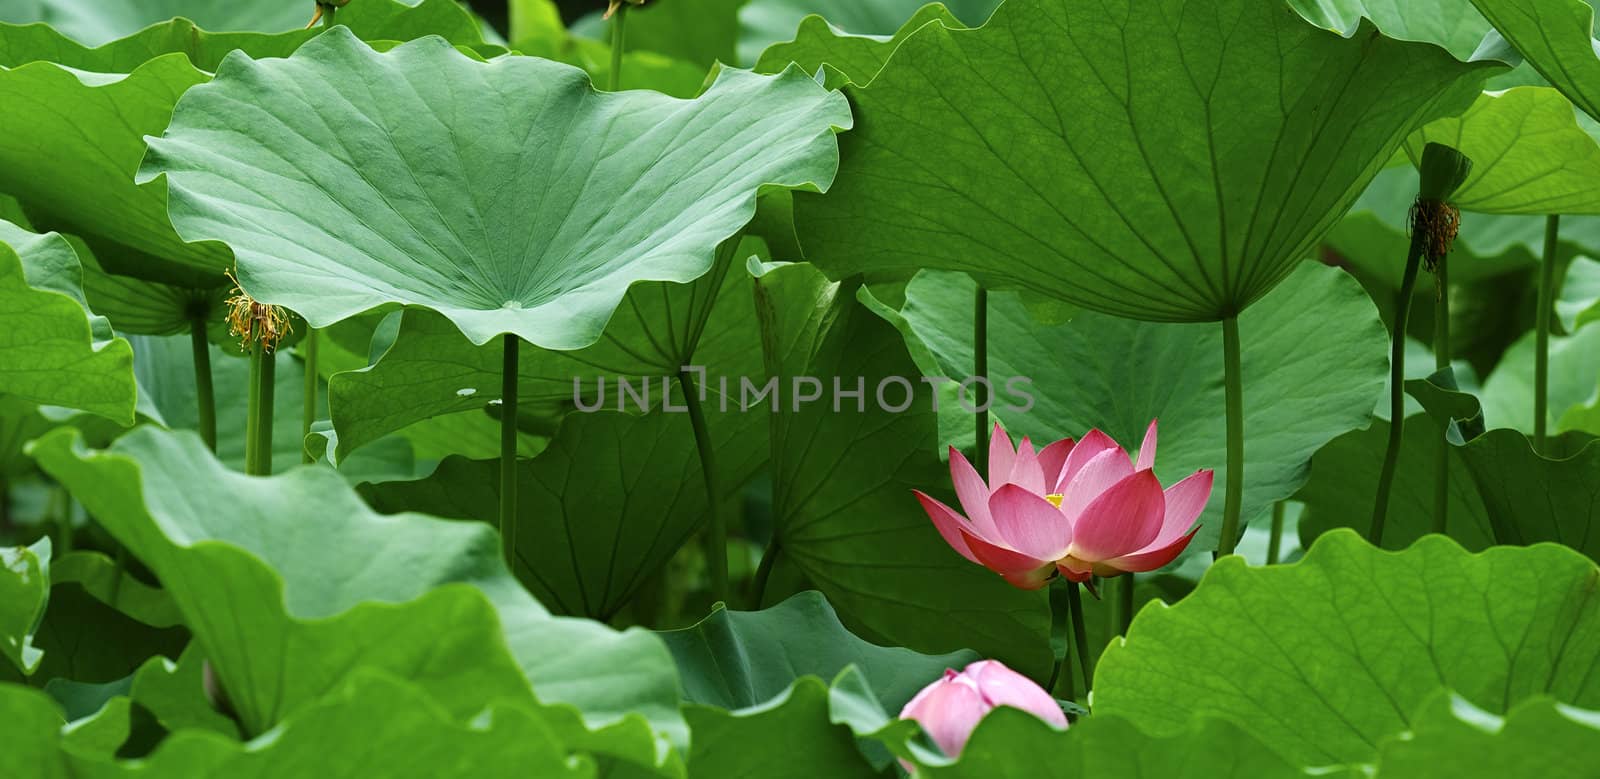 lotus flower by jackq